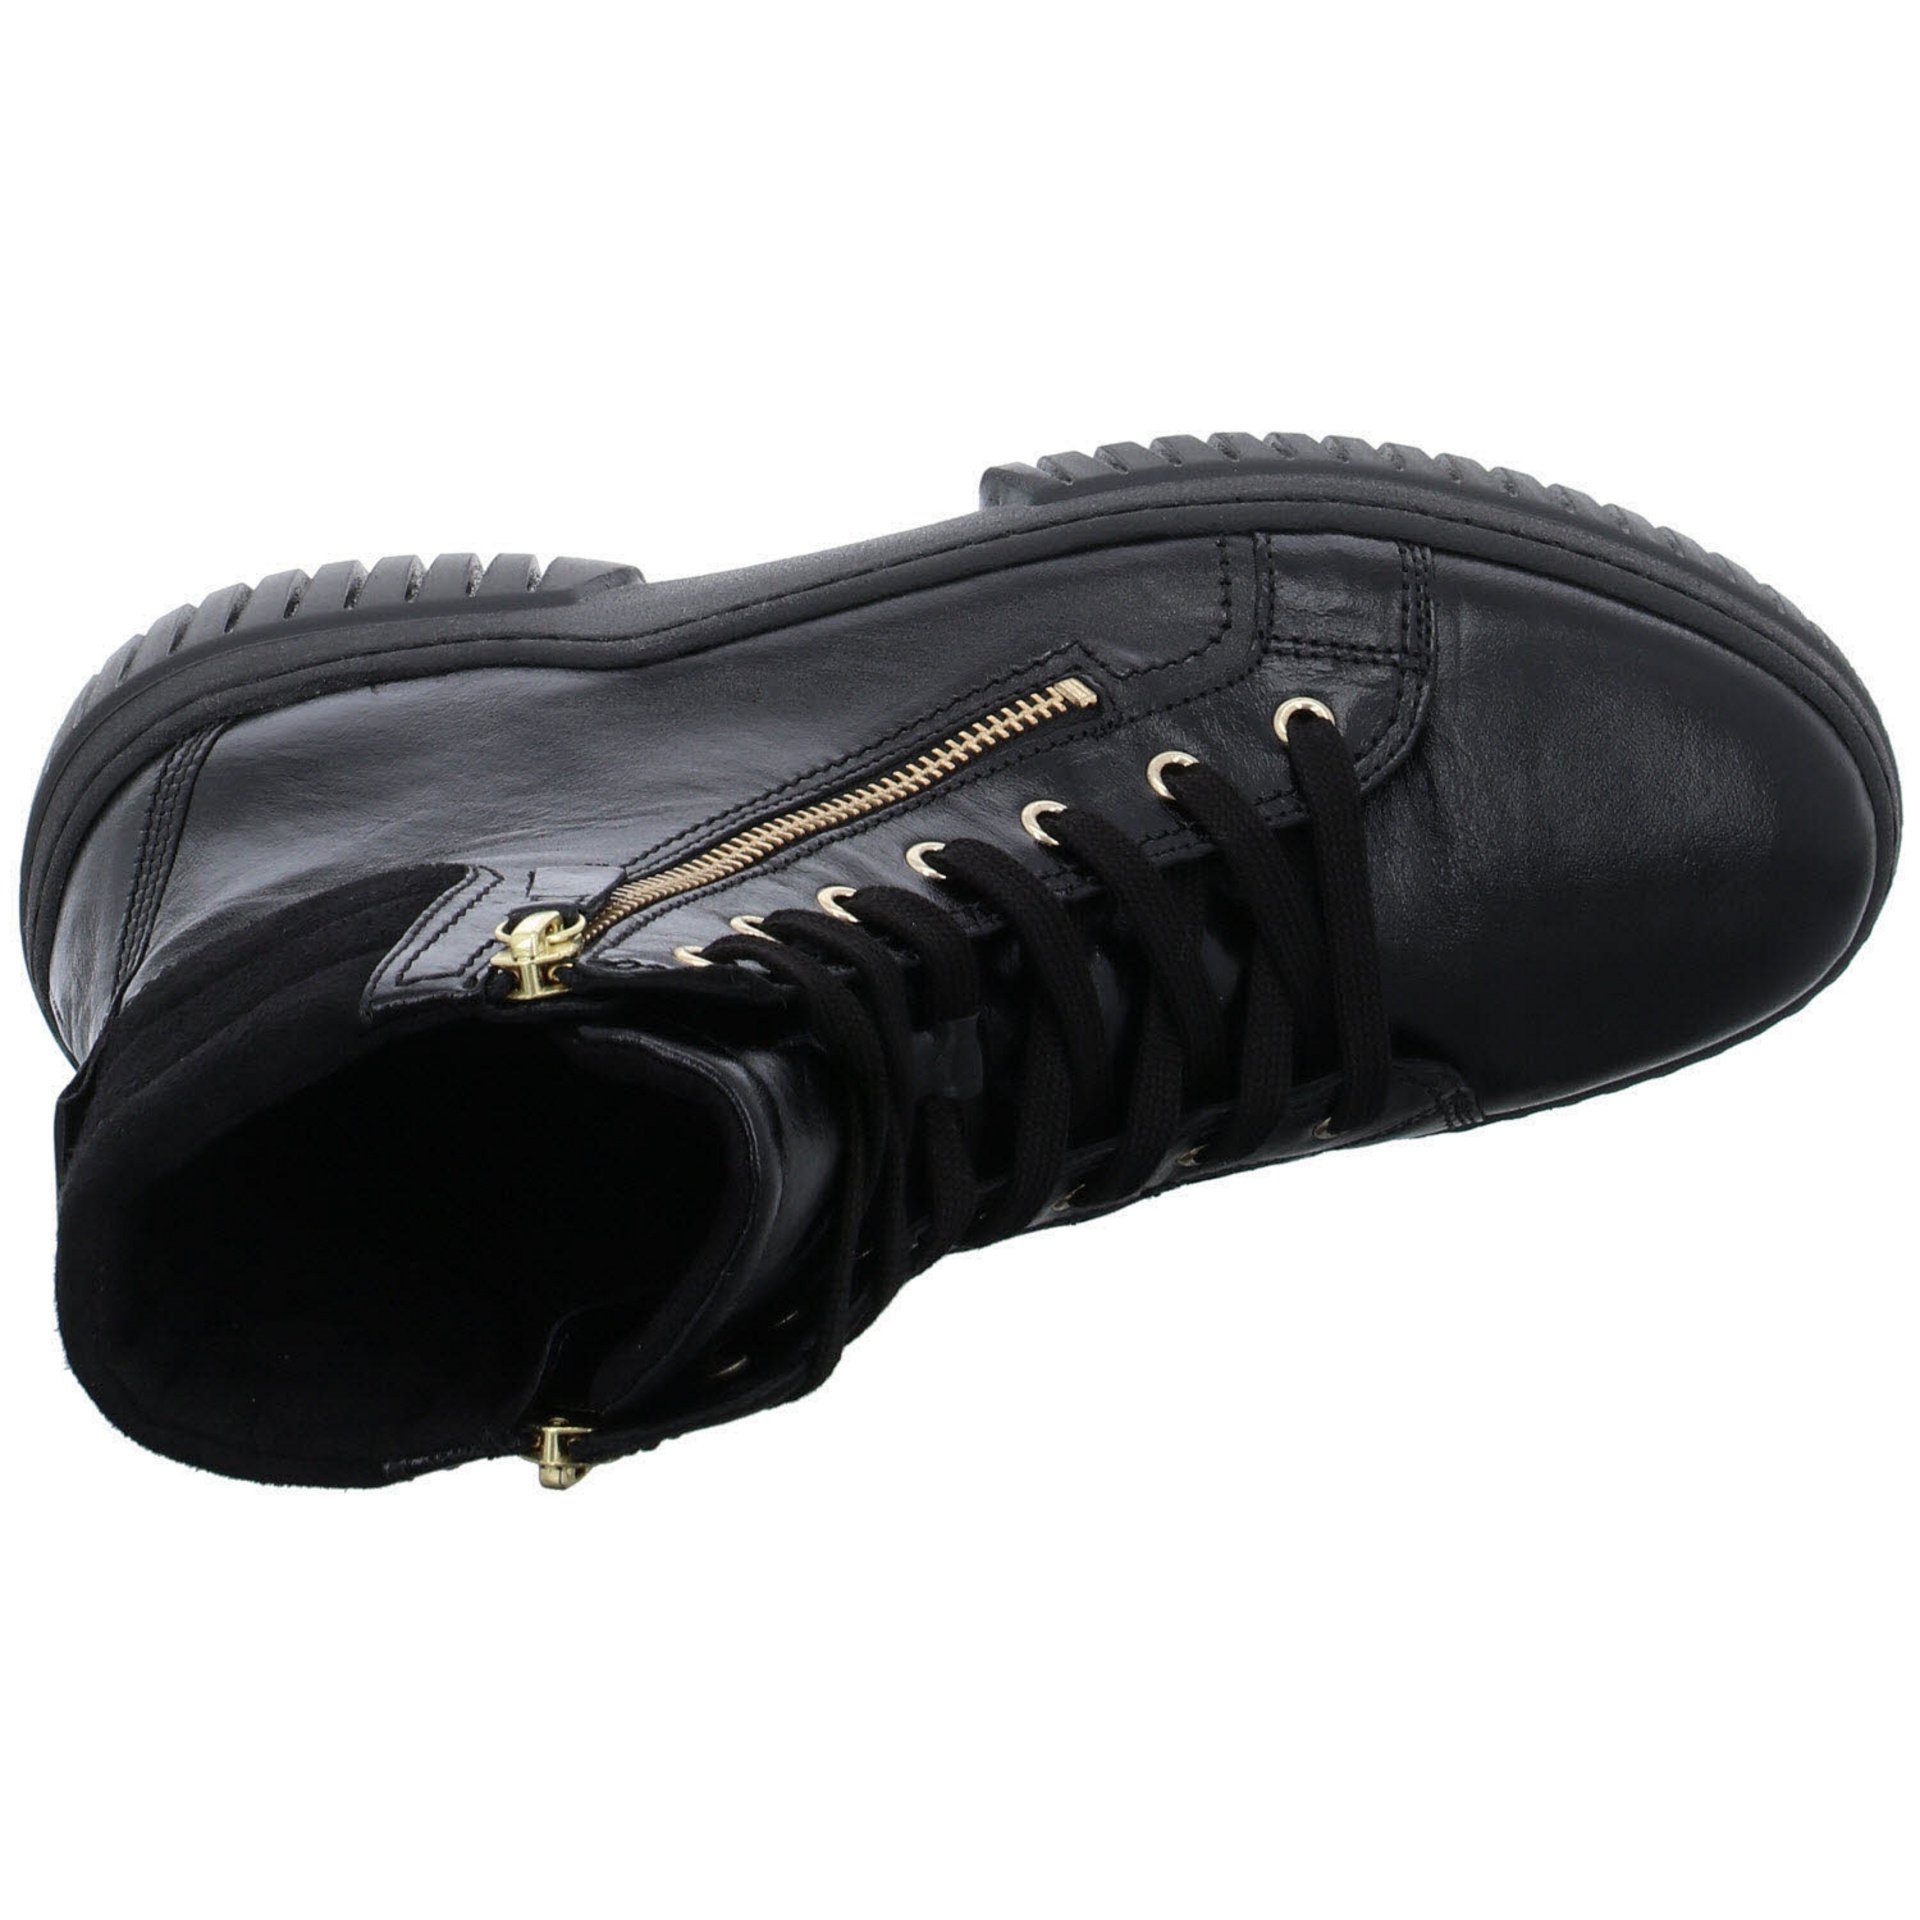 Elegant (gold) Stiefeletten Schnürstiefel Damen schwarz Glattleder Schuhe Boots Gabor Freizeit